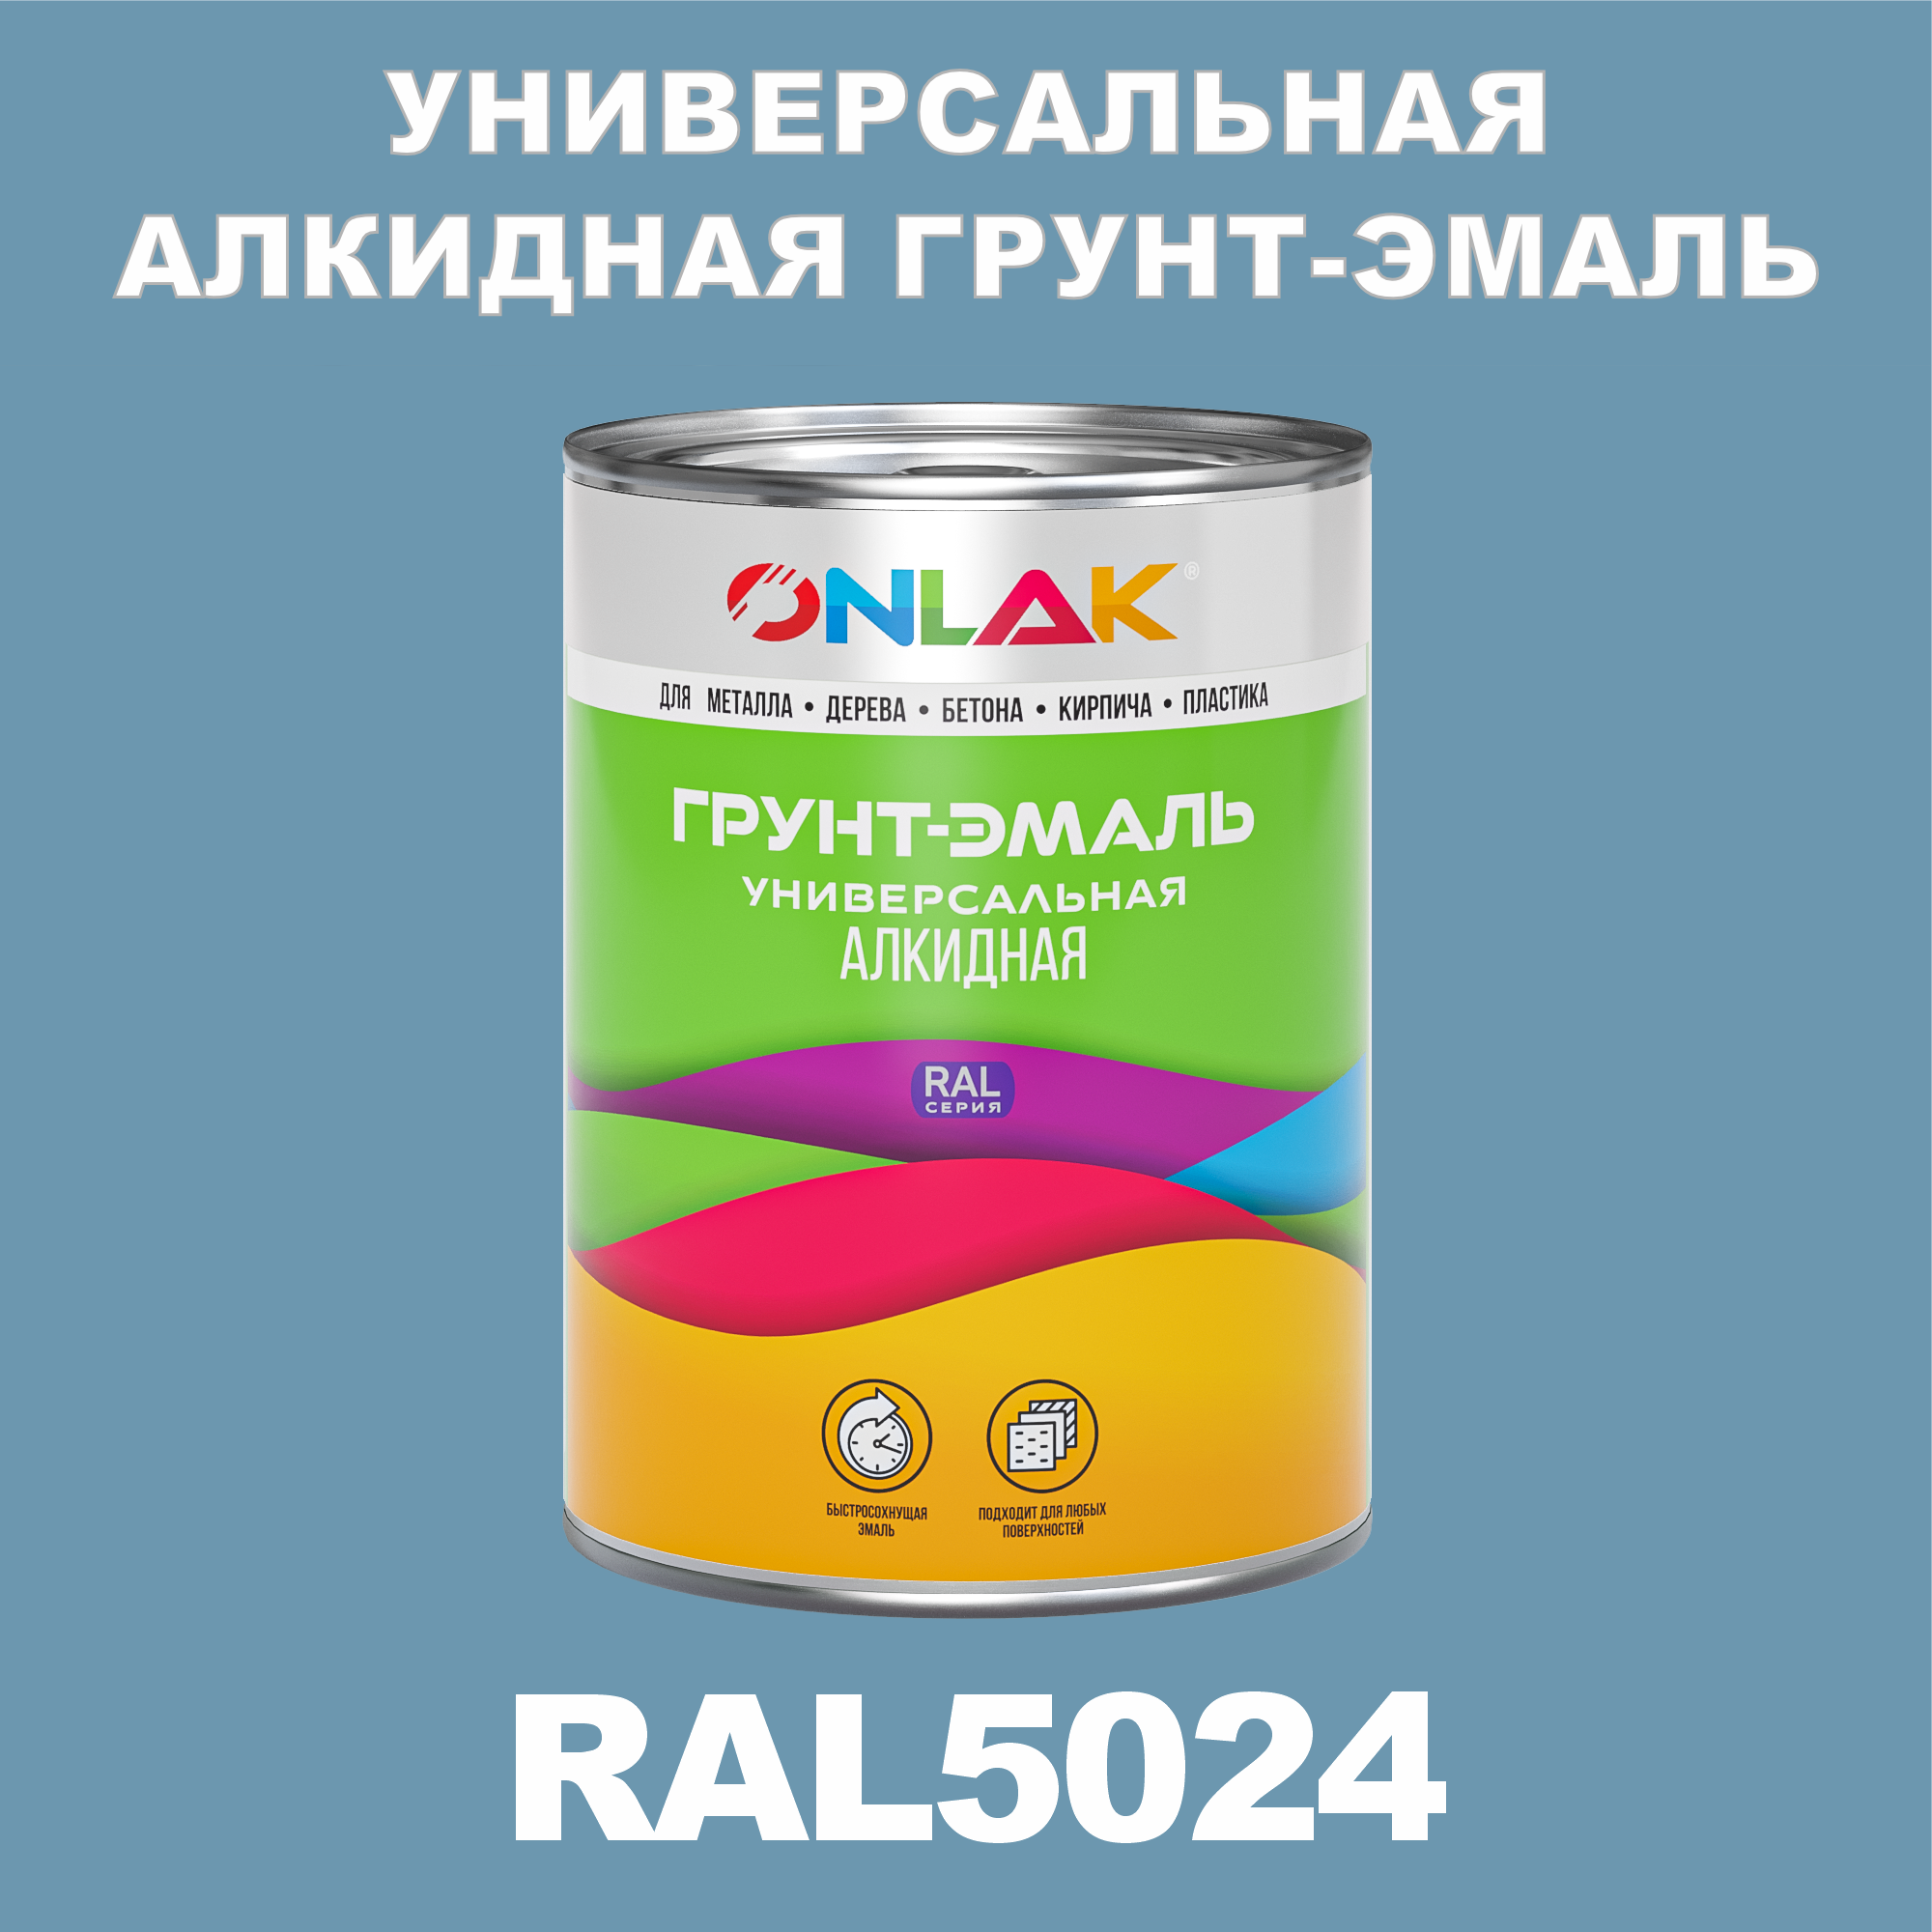 Грунт-эмаль ONLAK 1К RAL5024 антикоррозионная алкидная по металлу по ржавчине 1 кг грунт эмаль престиж по ржавчине алкидная зеленая 1 9 кг